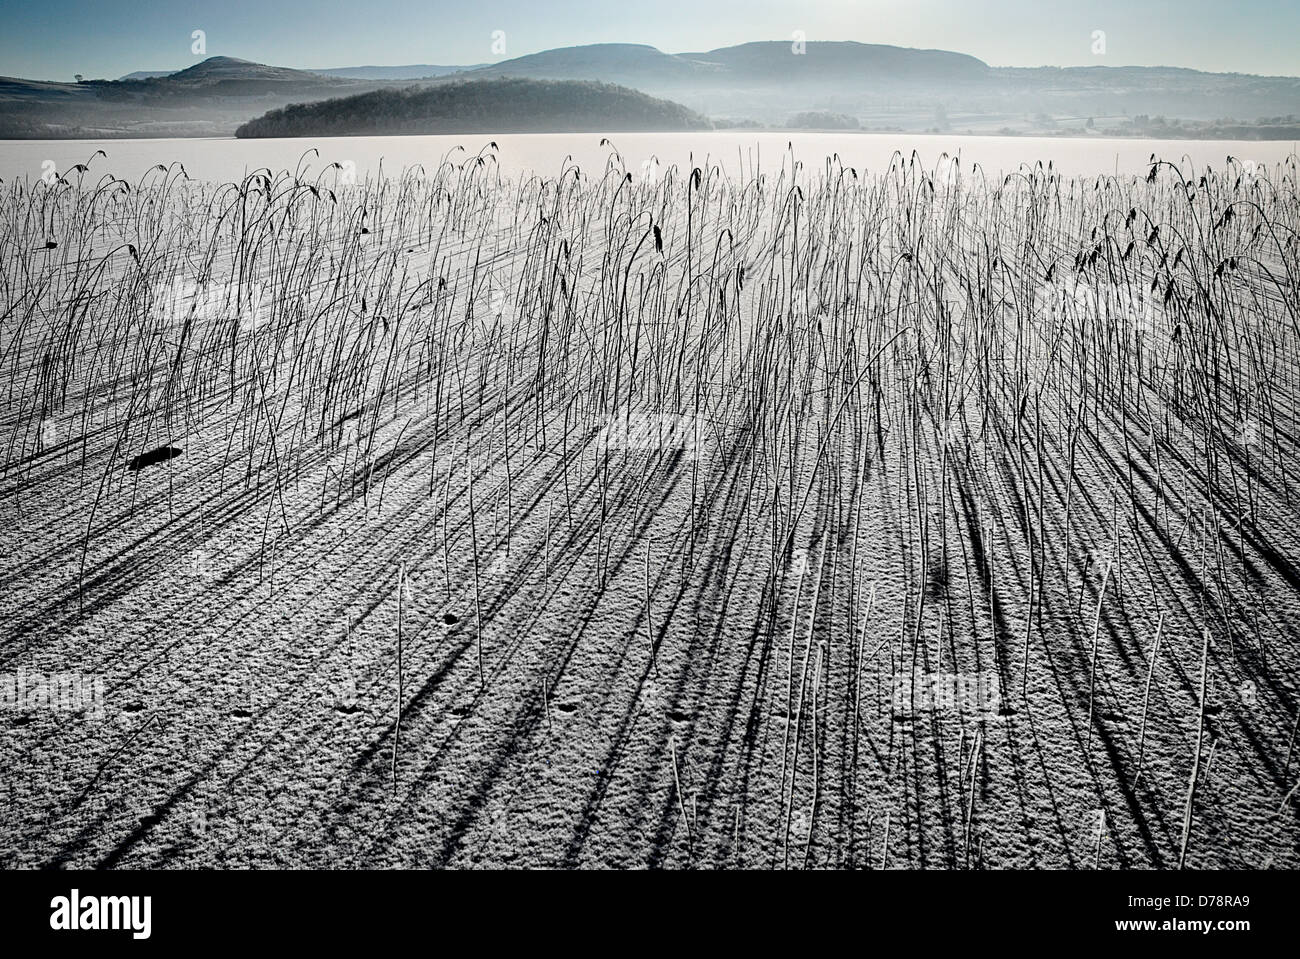 L'Irlande, le comté de Fermanagh, Lough MacNean, étendue d'eau gelée, avec des roseaux (Phragmites australis), moulage de grandes ombres. Banque D'Images